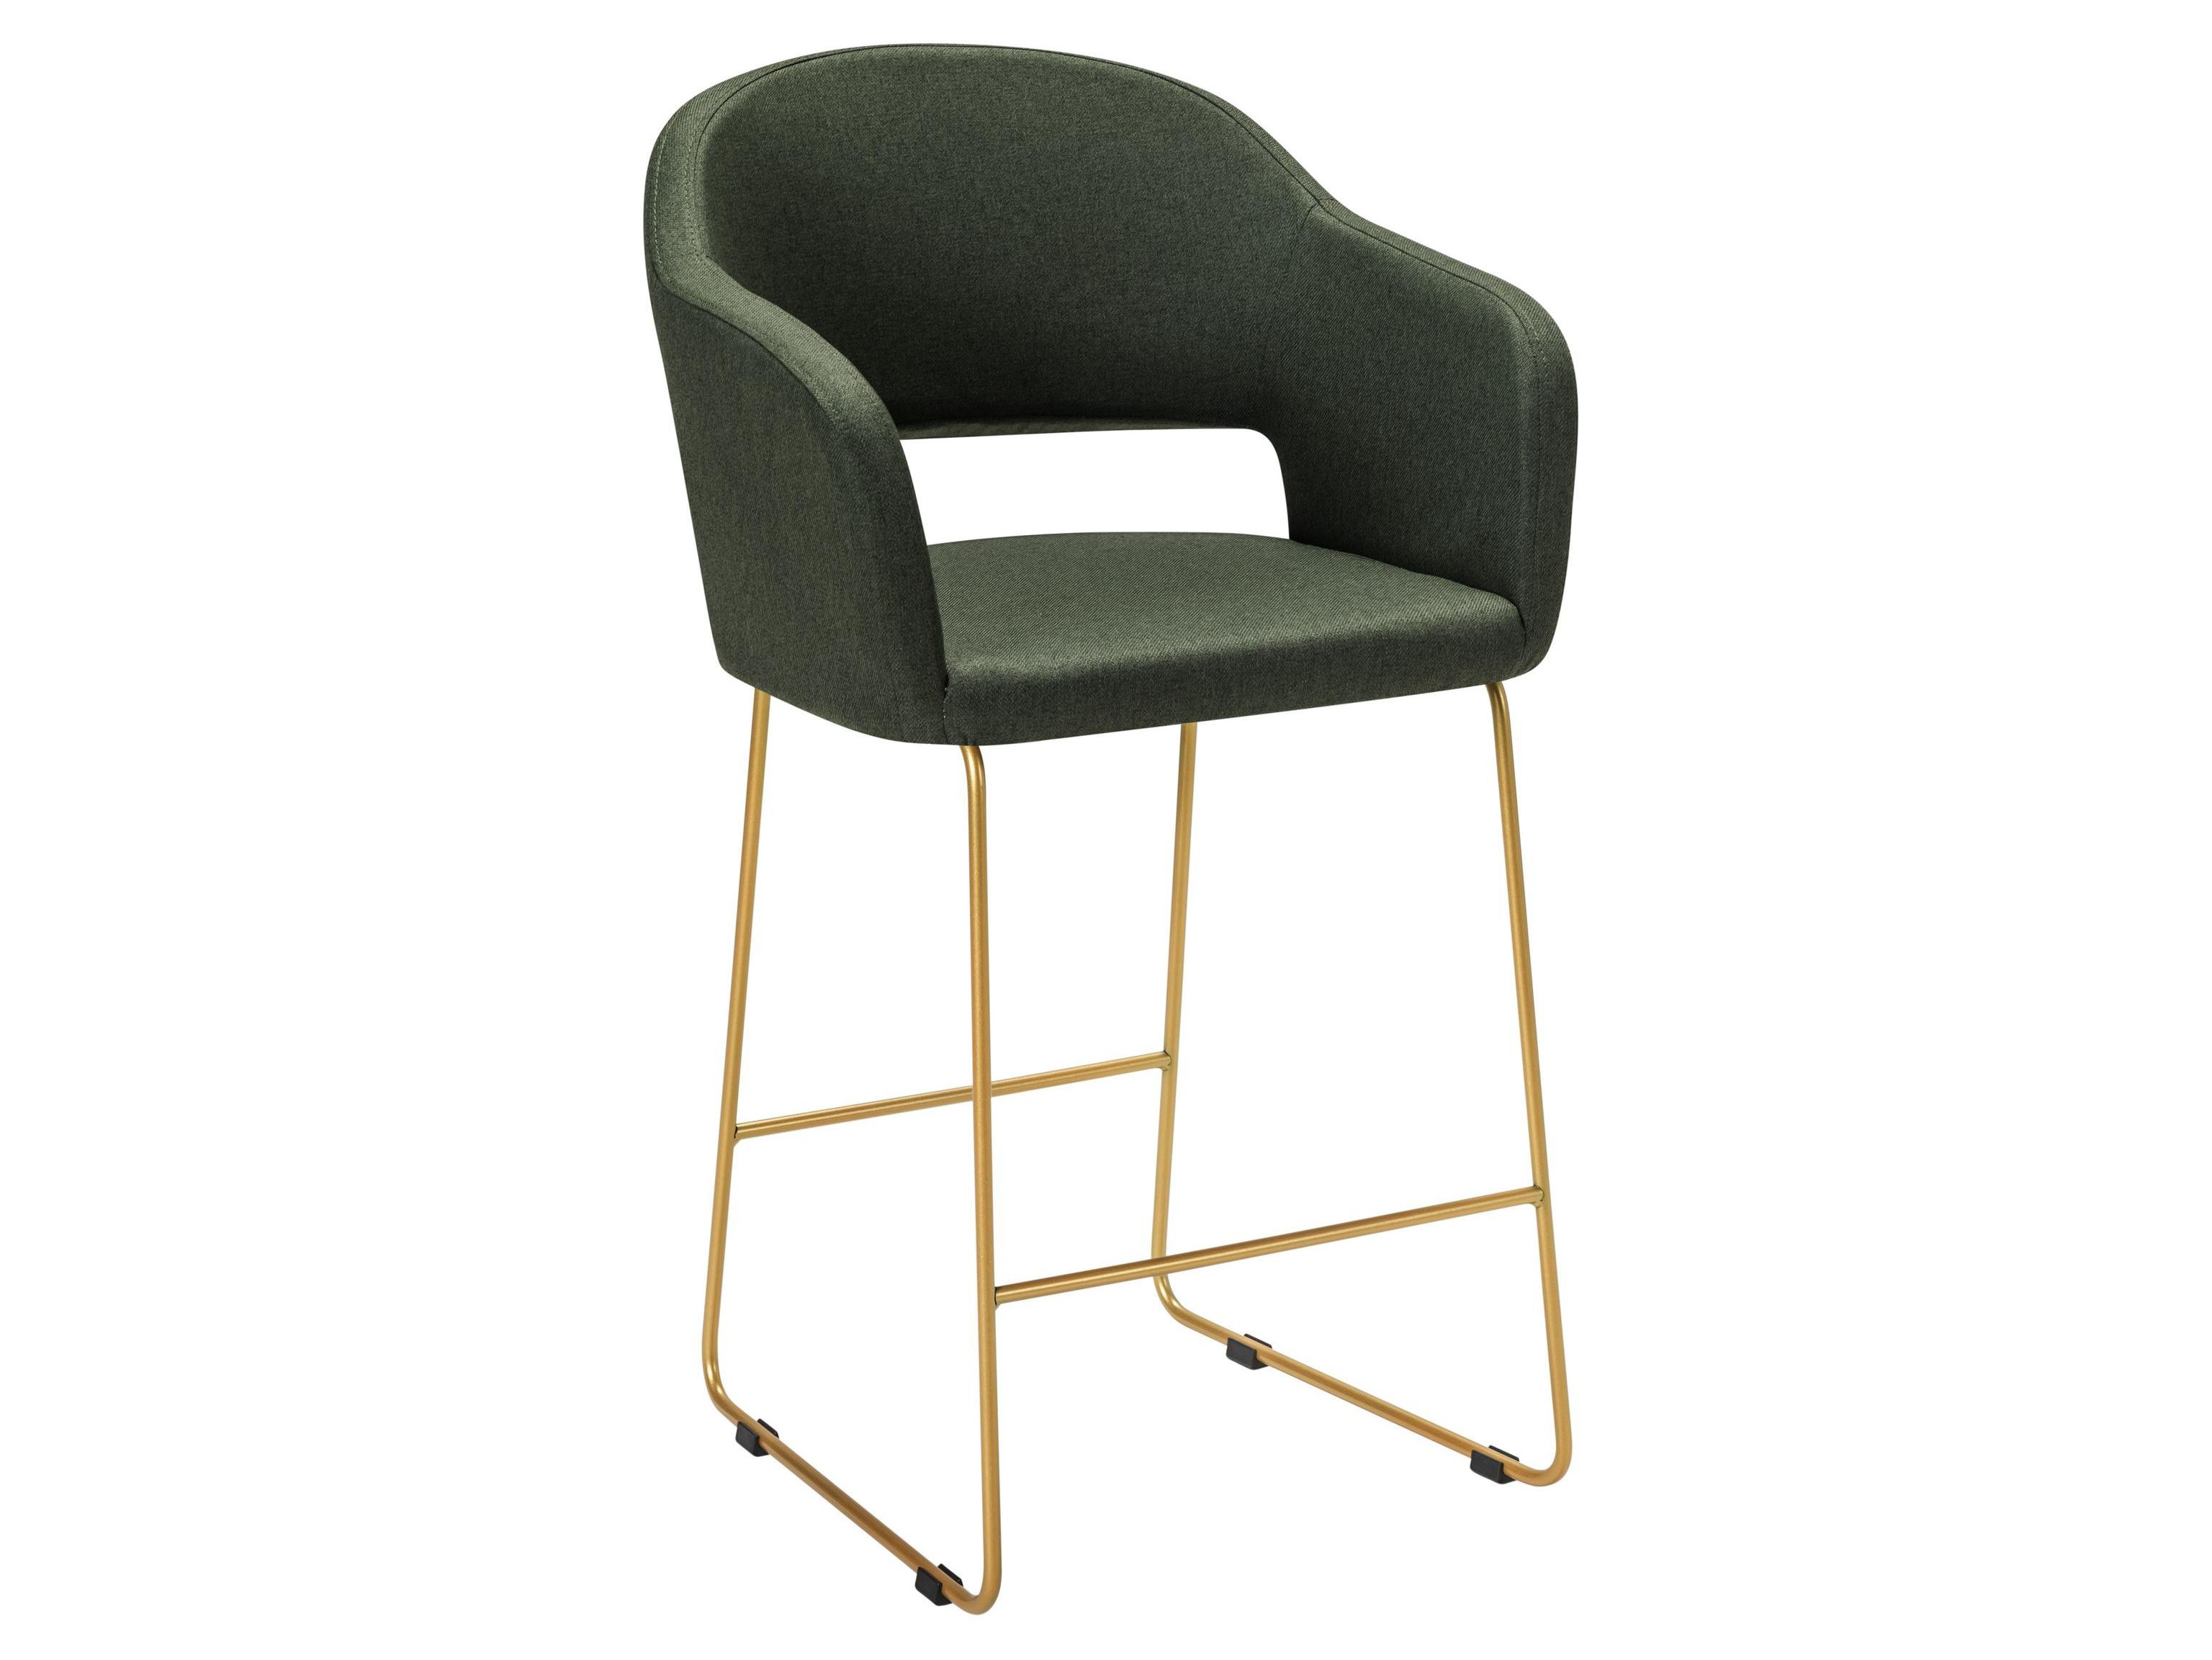 Кресло полубар Oscar тёмно-зеленый/Линк золото Зеленый, Металл кресло полубар oscar грей линкзолот синий металл